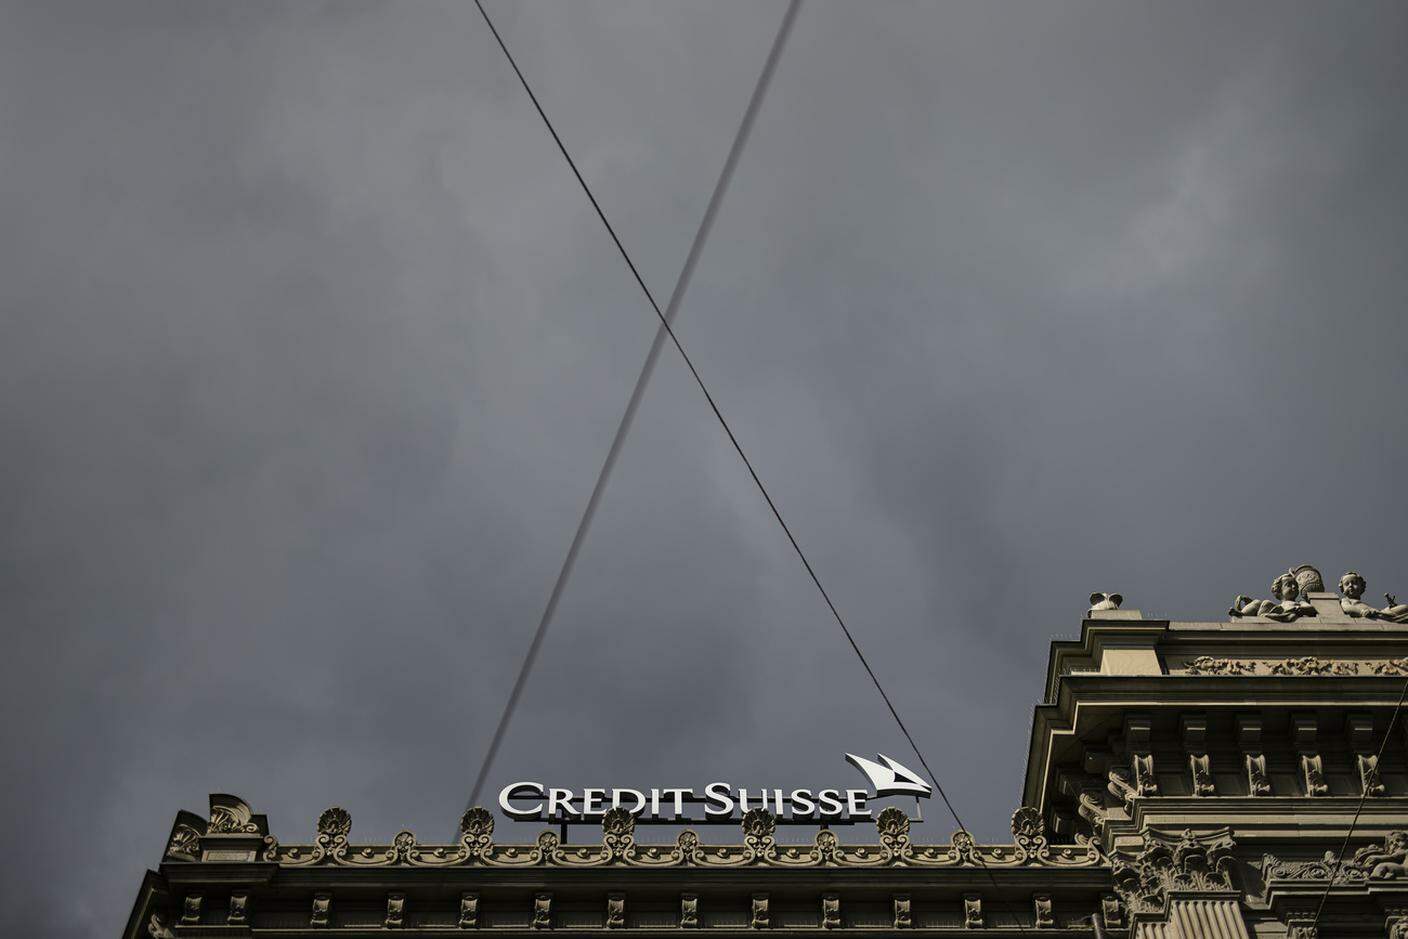 L'ultima assemblea generale di Credit Suisse, ormai nell'orbita di UBS, si terrà martedì prossimo